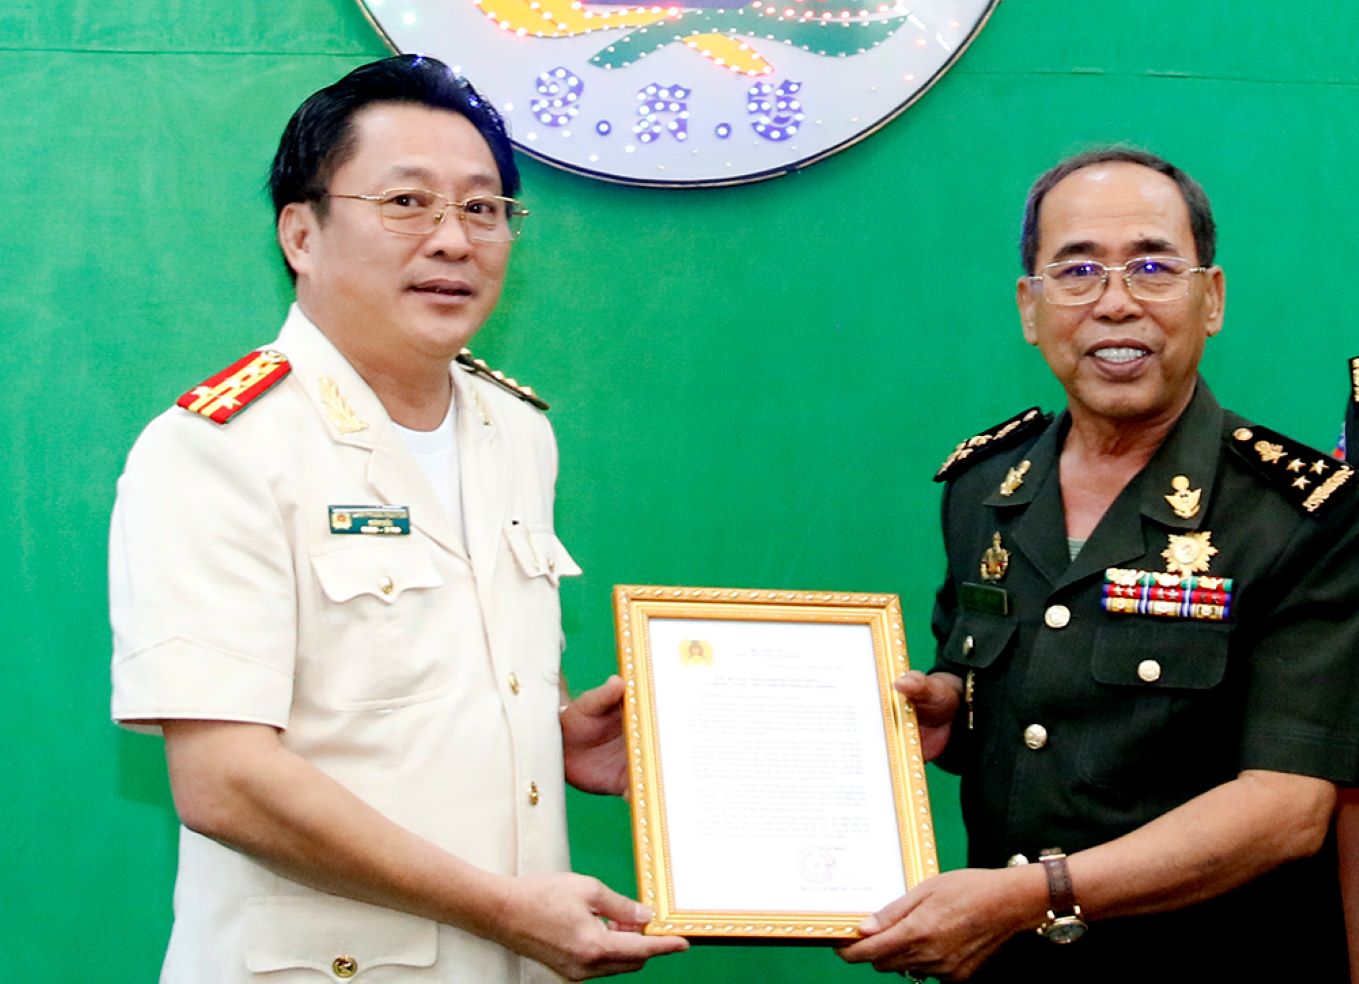 El coronel Lam Phuoc Nguyen, director de la policía provincial de An Giang, presentó una carta de deseos de Año Nuevo al general Dieng Sa Run, subcomandante del Comando de la Guardia del Ejército Real de Camboya. Foto de : Vu Tien